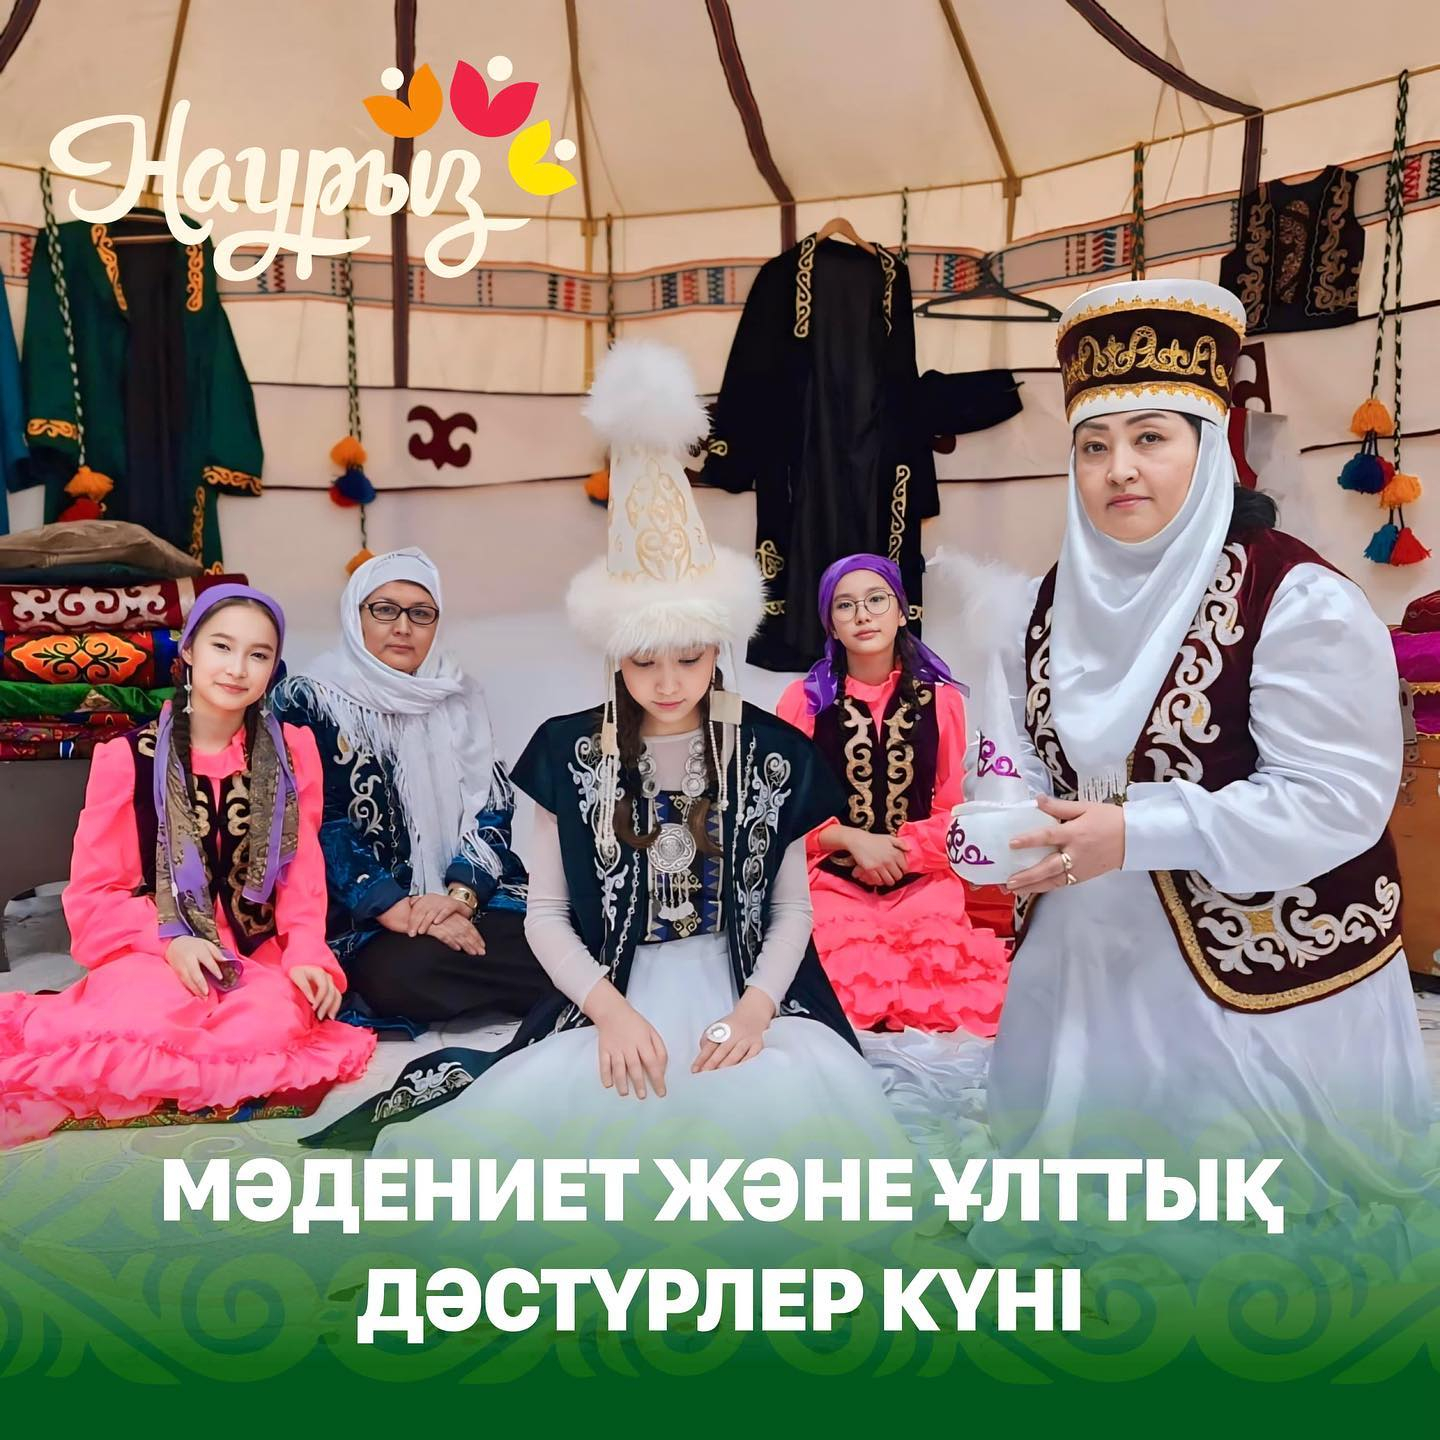 16 марта - День культуры и национальных традиций. В школе имени Мухтара Ауэзова прошел марафон-презентация популярных народных казахских обрядов и традиций, один из которых «Сырға салу» учащиеся вместе с учителями инсценировали перед собравшимися.